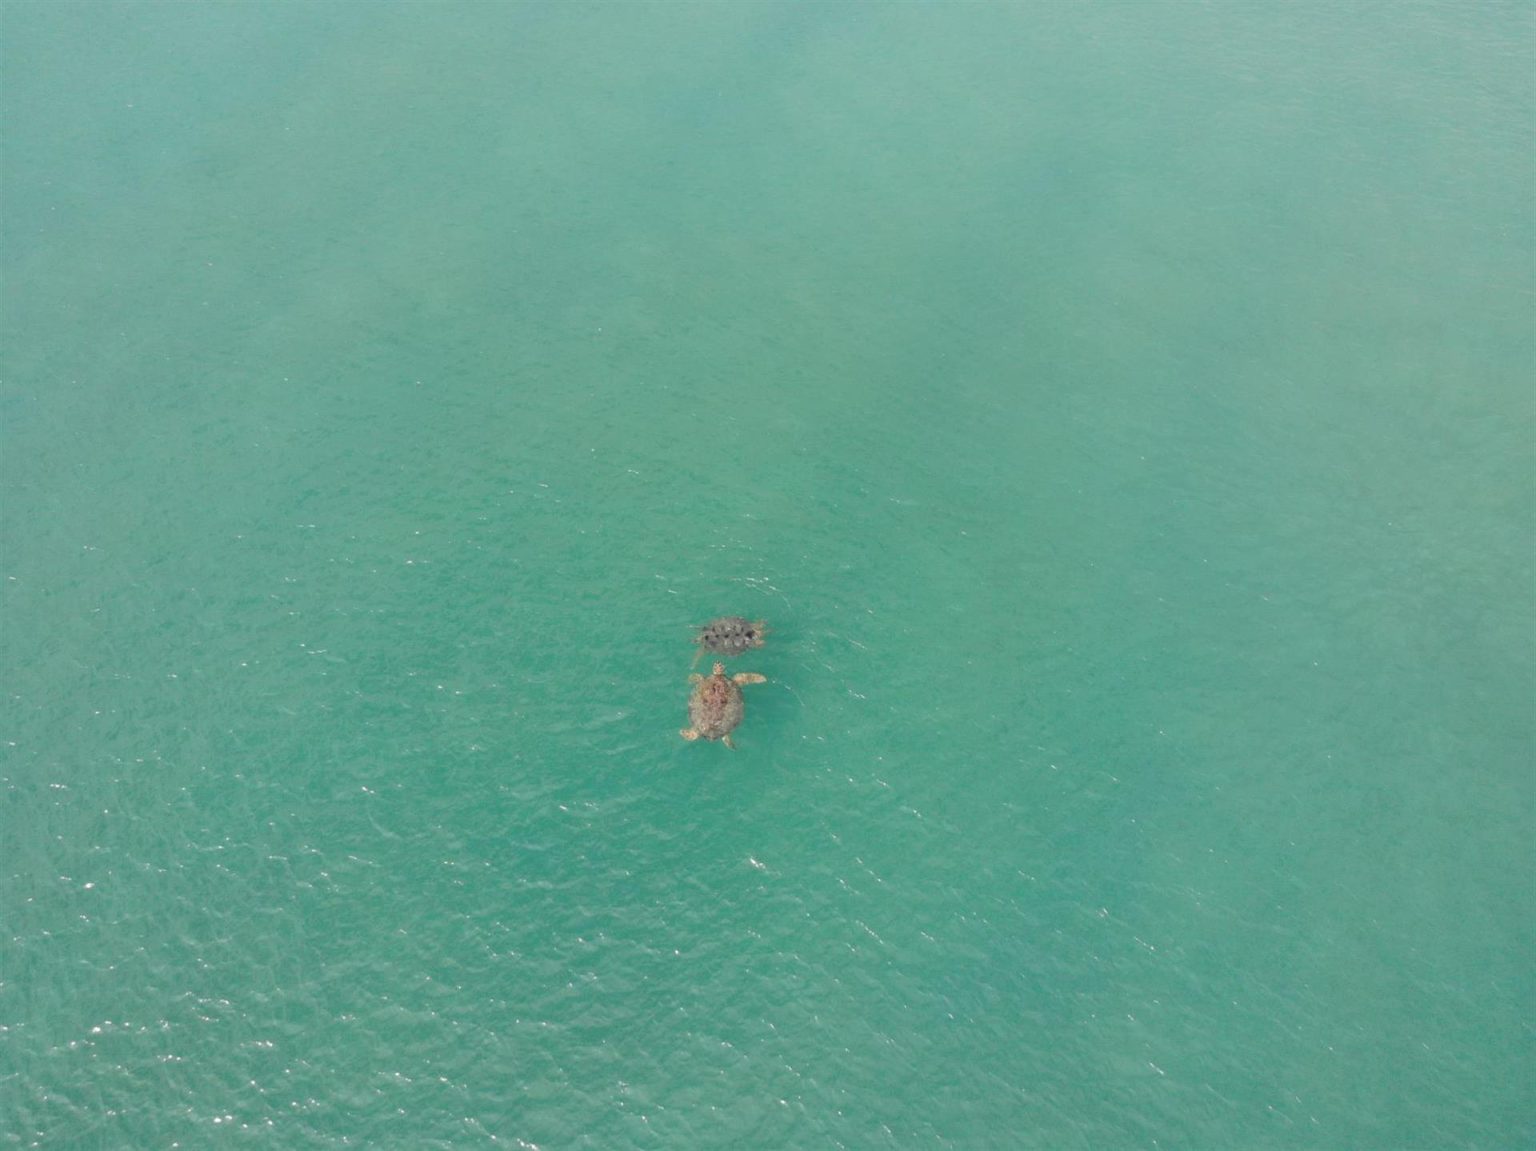 Fotografía aérea cedida hoy por Embry Riddle Aeronautical University donde se aprecia a unas tortugas mientras nadan en el mar. EFE/Embry-Riddle /SOLO USO EDITORIAL /NO VENTAS /SOLO DISPONIBLE PARA ILUSTRAR LA NOTICIA QUE ACOMPAÑA /CRÉDITO OBLIGATORIO